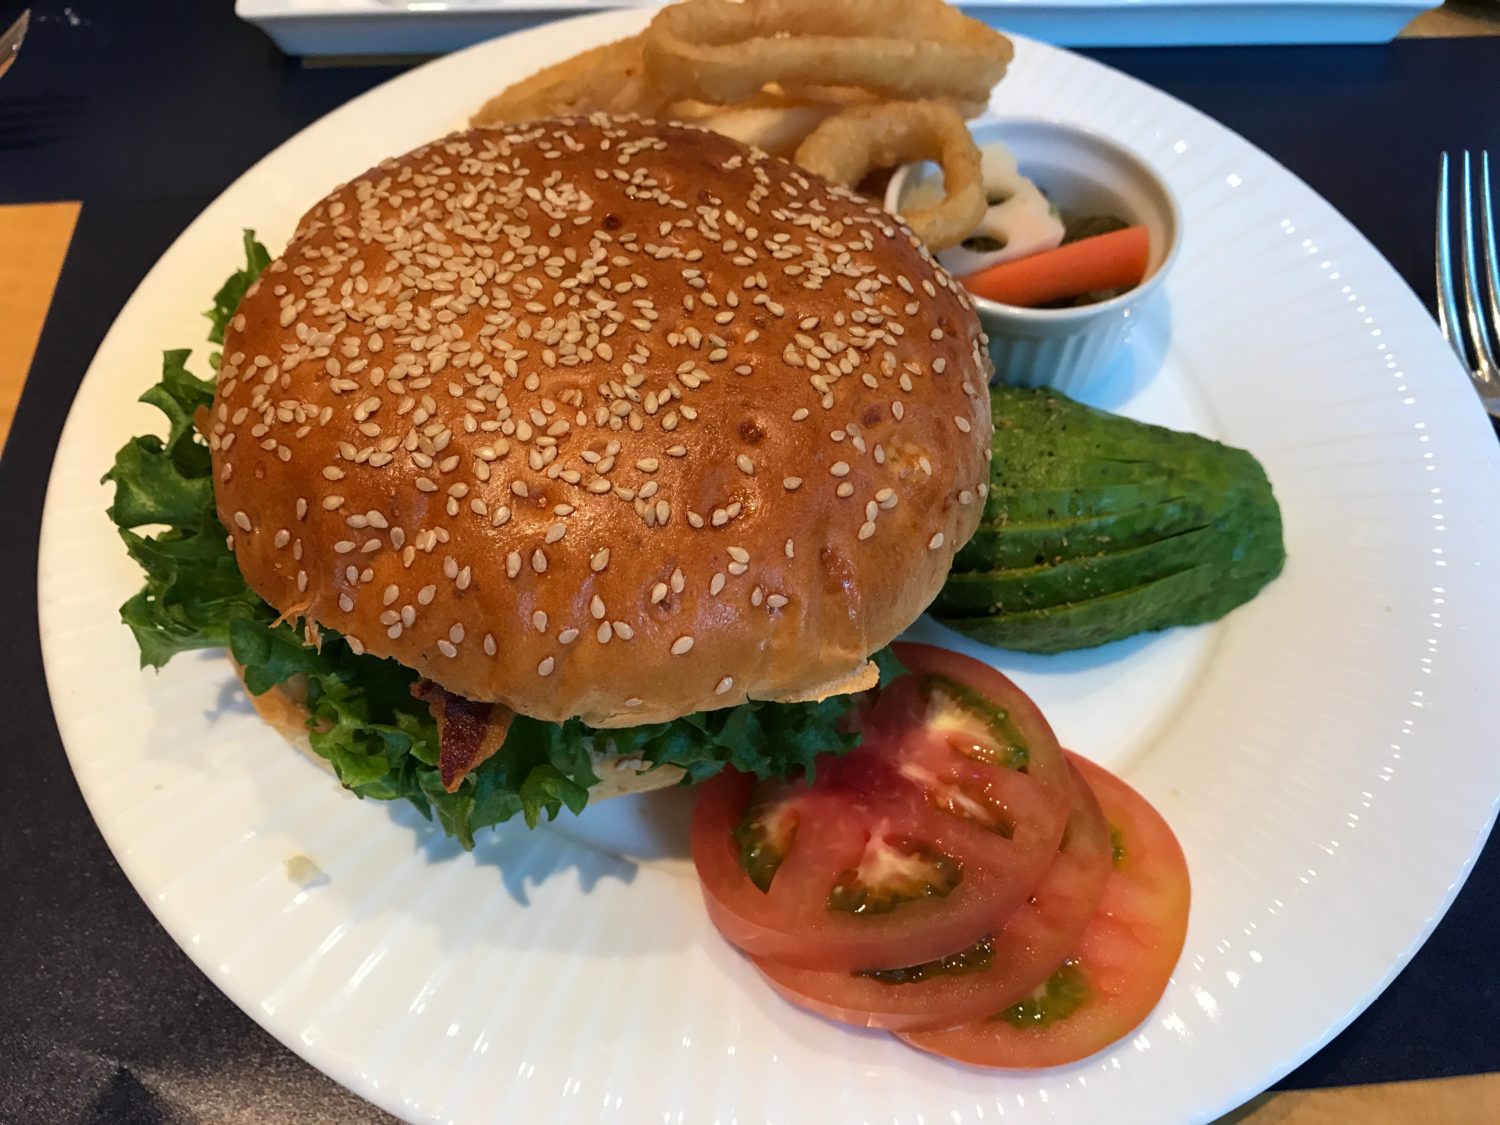 セルリアンタワー東急ホテルで食べた「ビッグハンバーガー」は、ひとりでは食べきれない大きさ